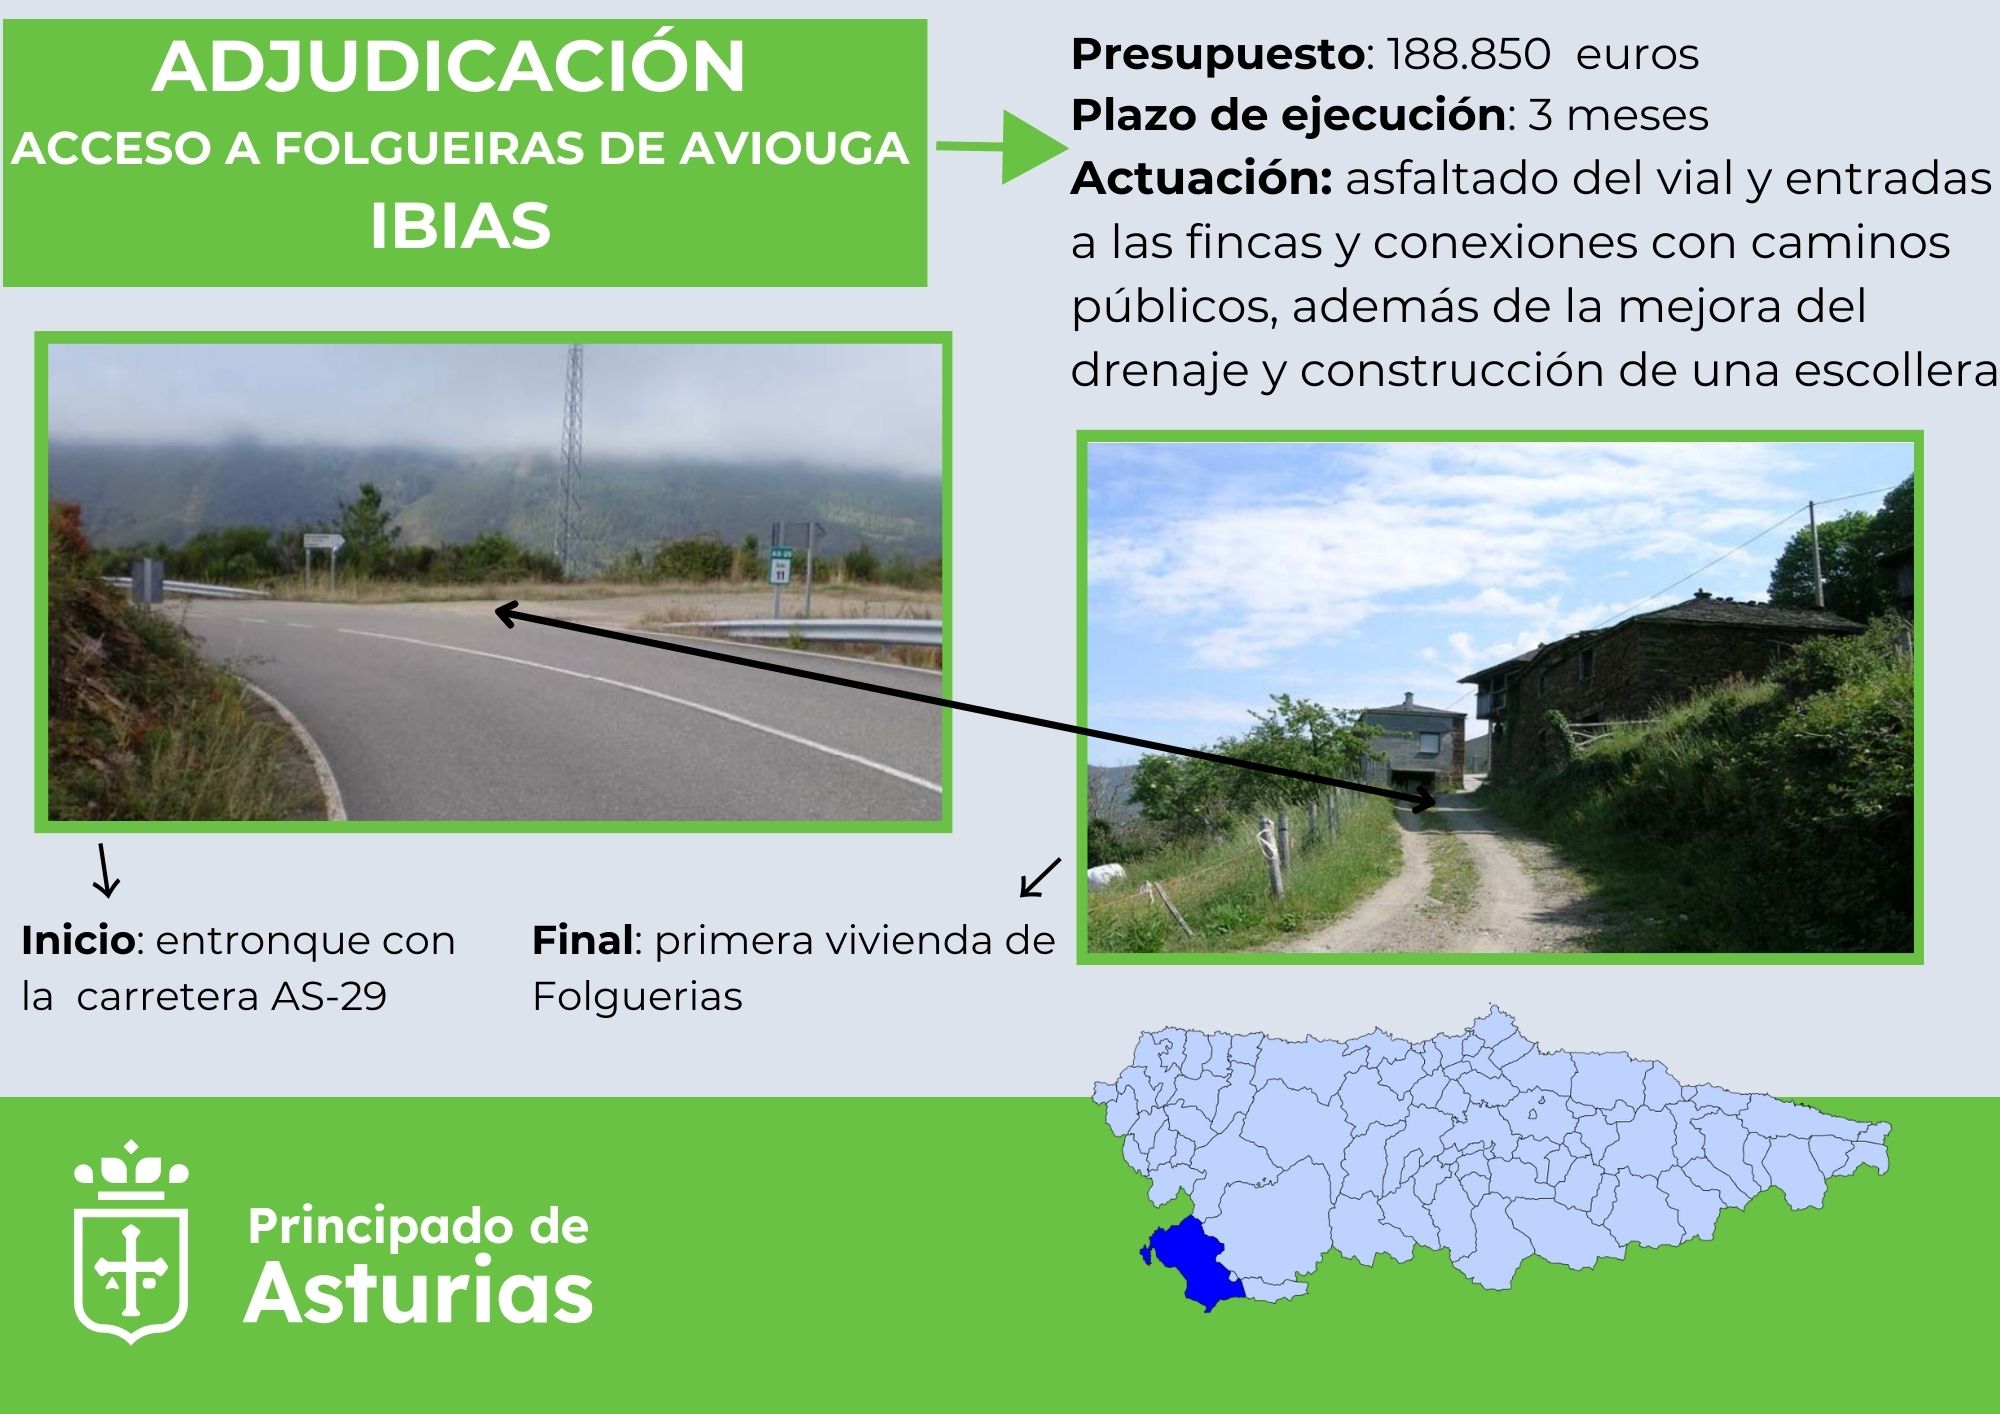 Imagen del artículo El Principado adjudica por casi 189.000 euros las obras de pavimentación del camino de acceso a Folgueiras de Aviouga, en Ibias